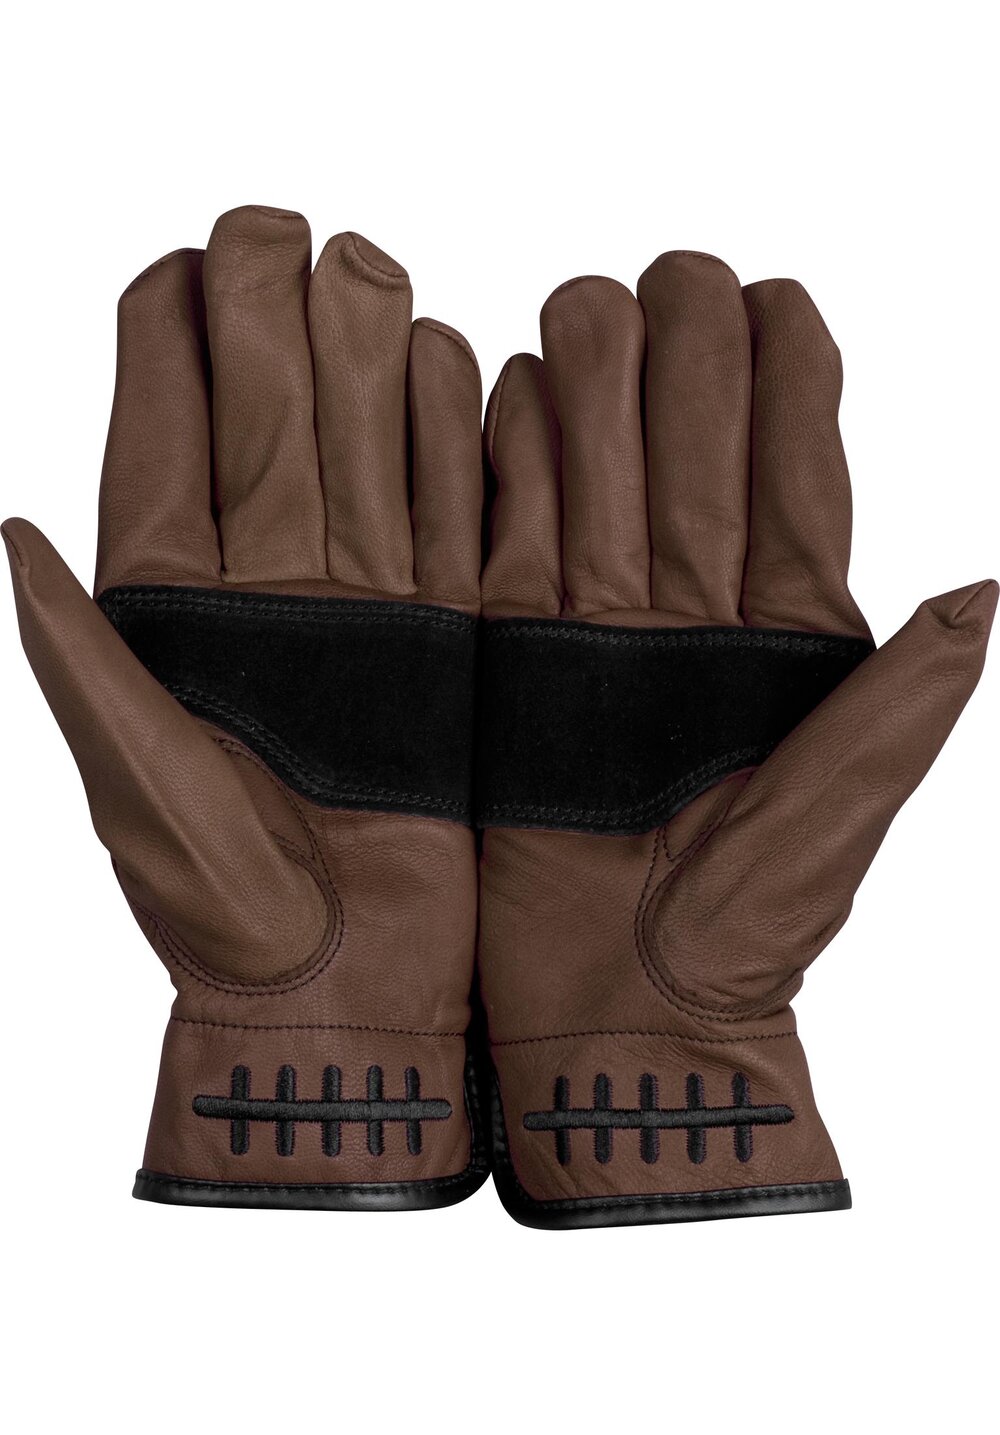 Loser Machine Death Grip Gloves Brown